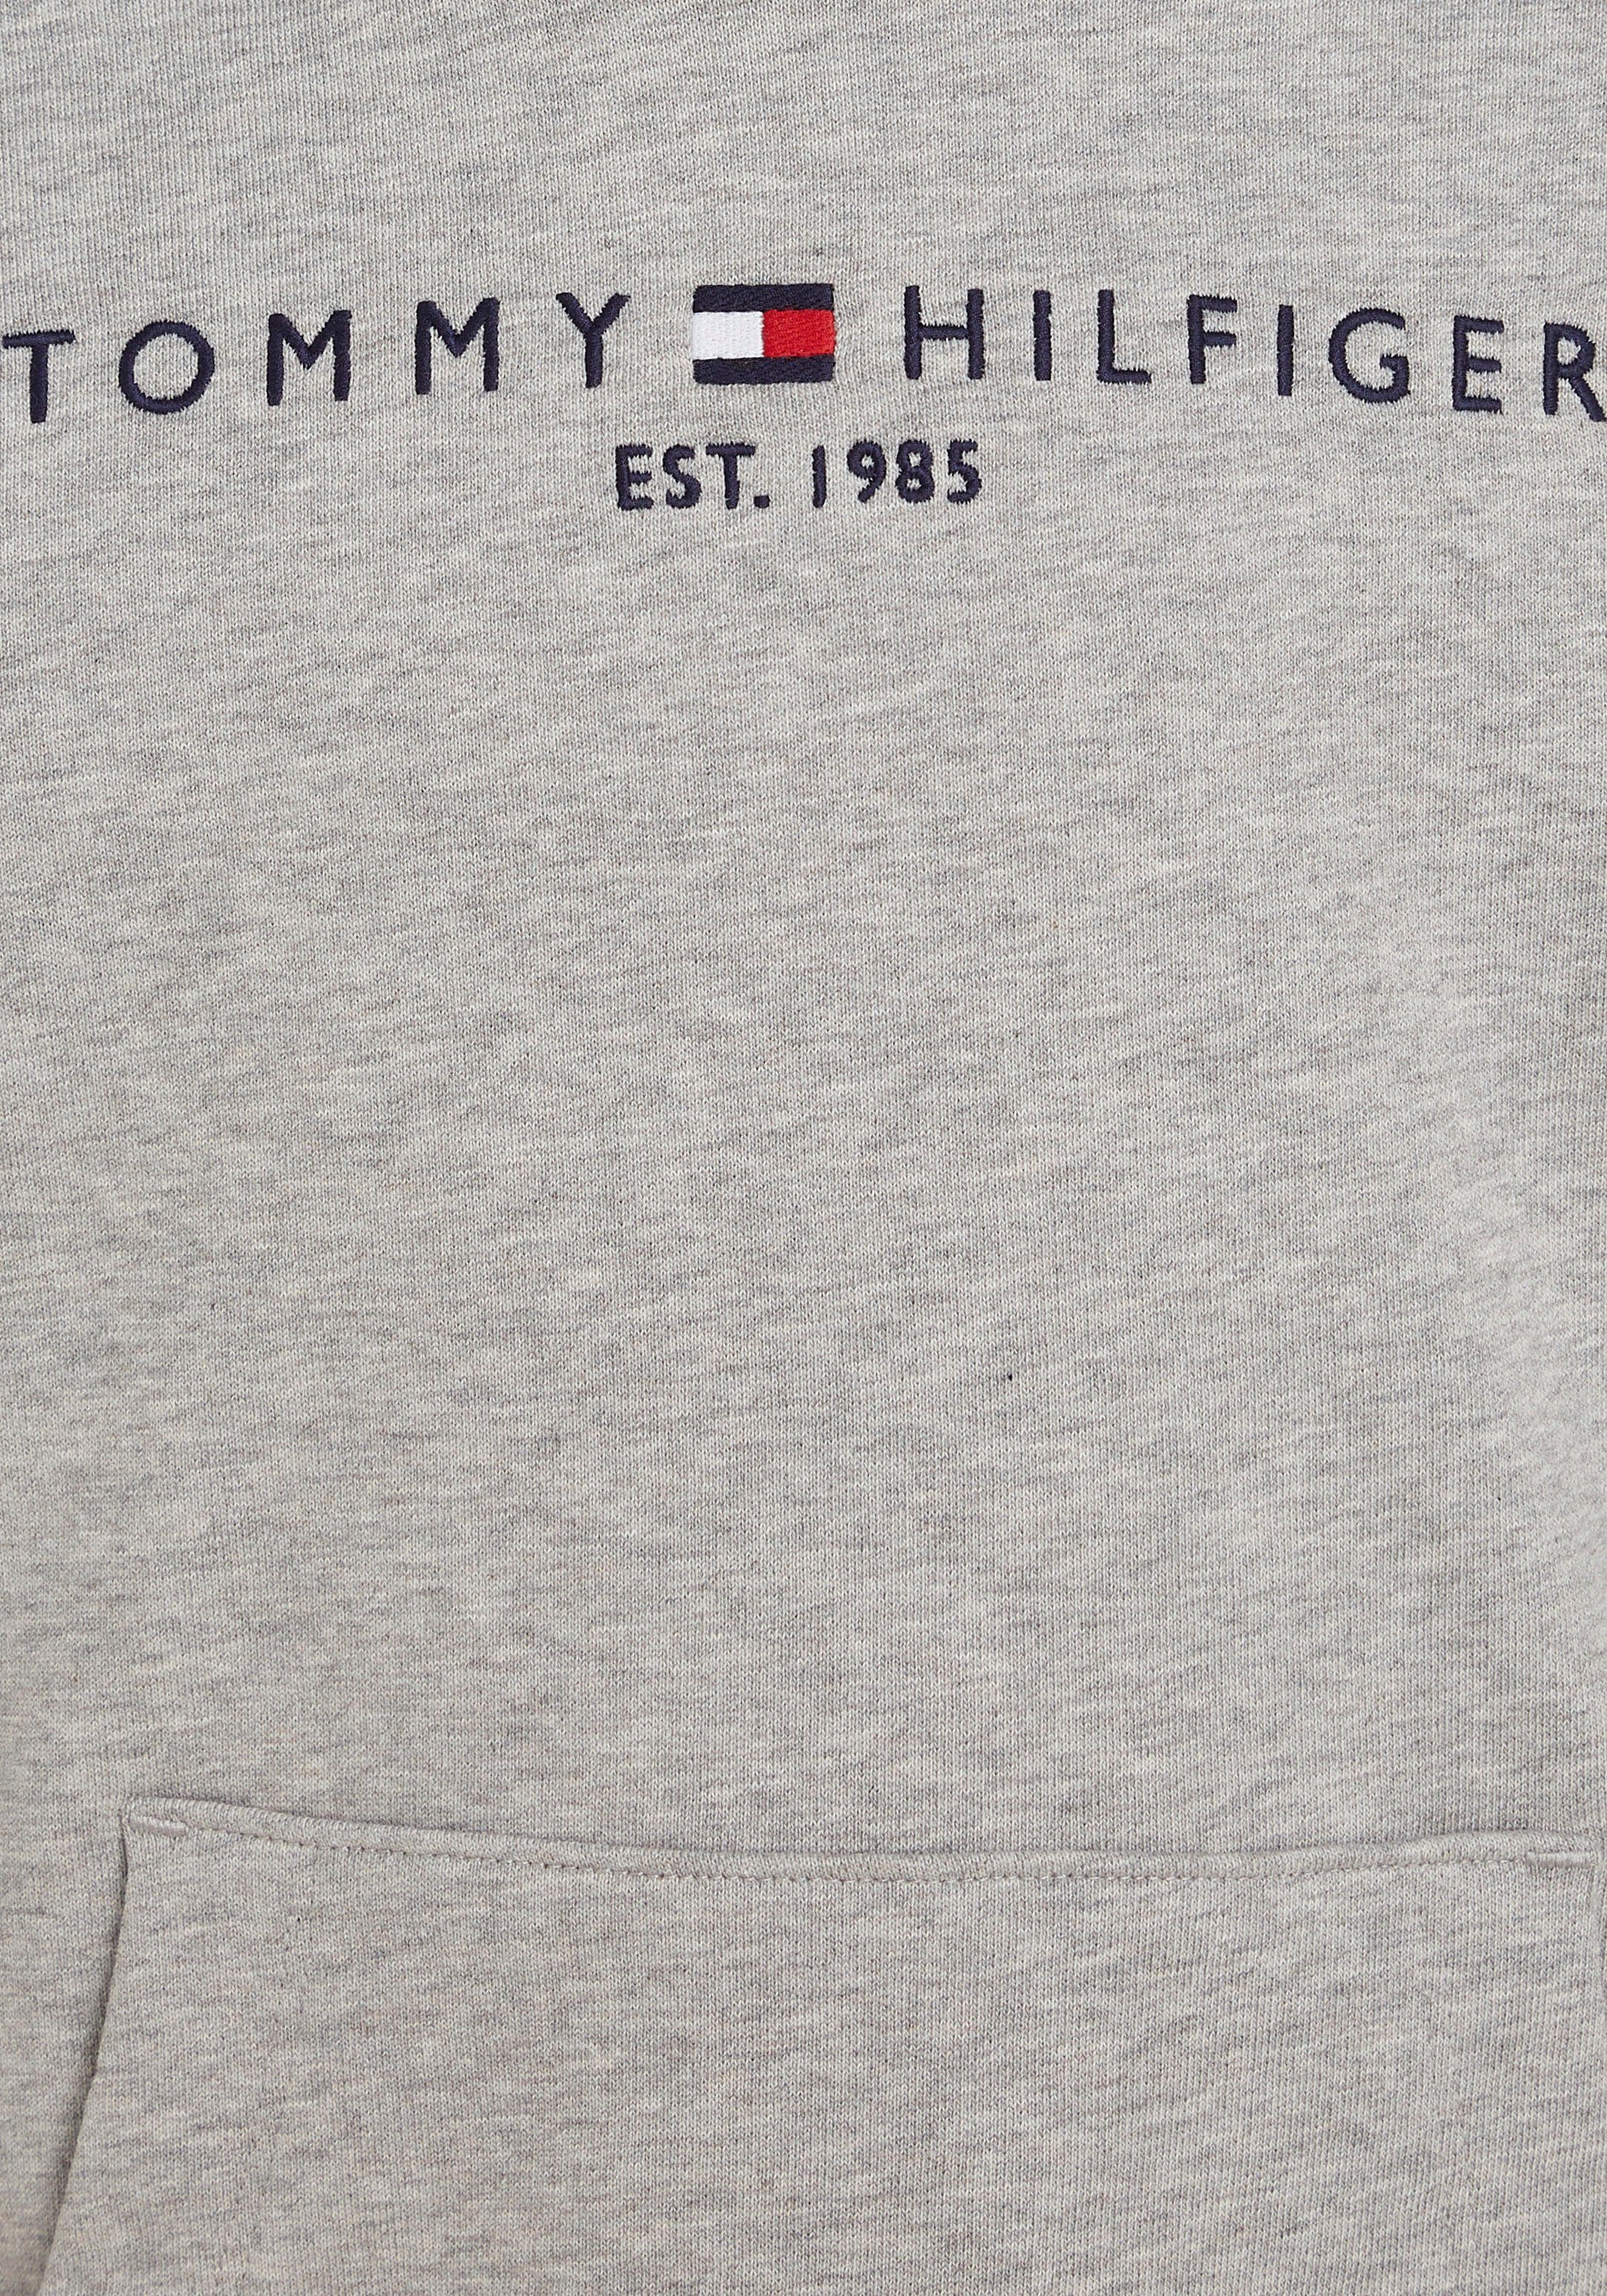 Kapuzensweatshirt ESSENTIAL Tommy Junior Mädchen MiniMe,für Jungen Kinder HOODIE und Kids Hilfiger